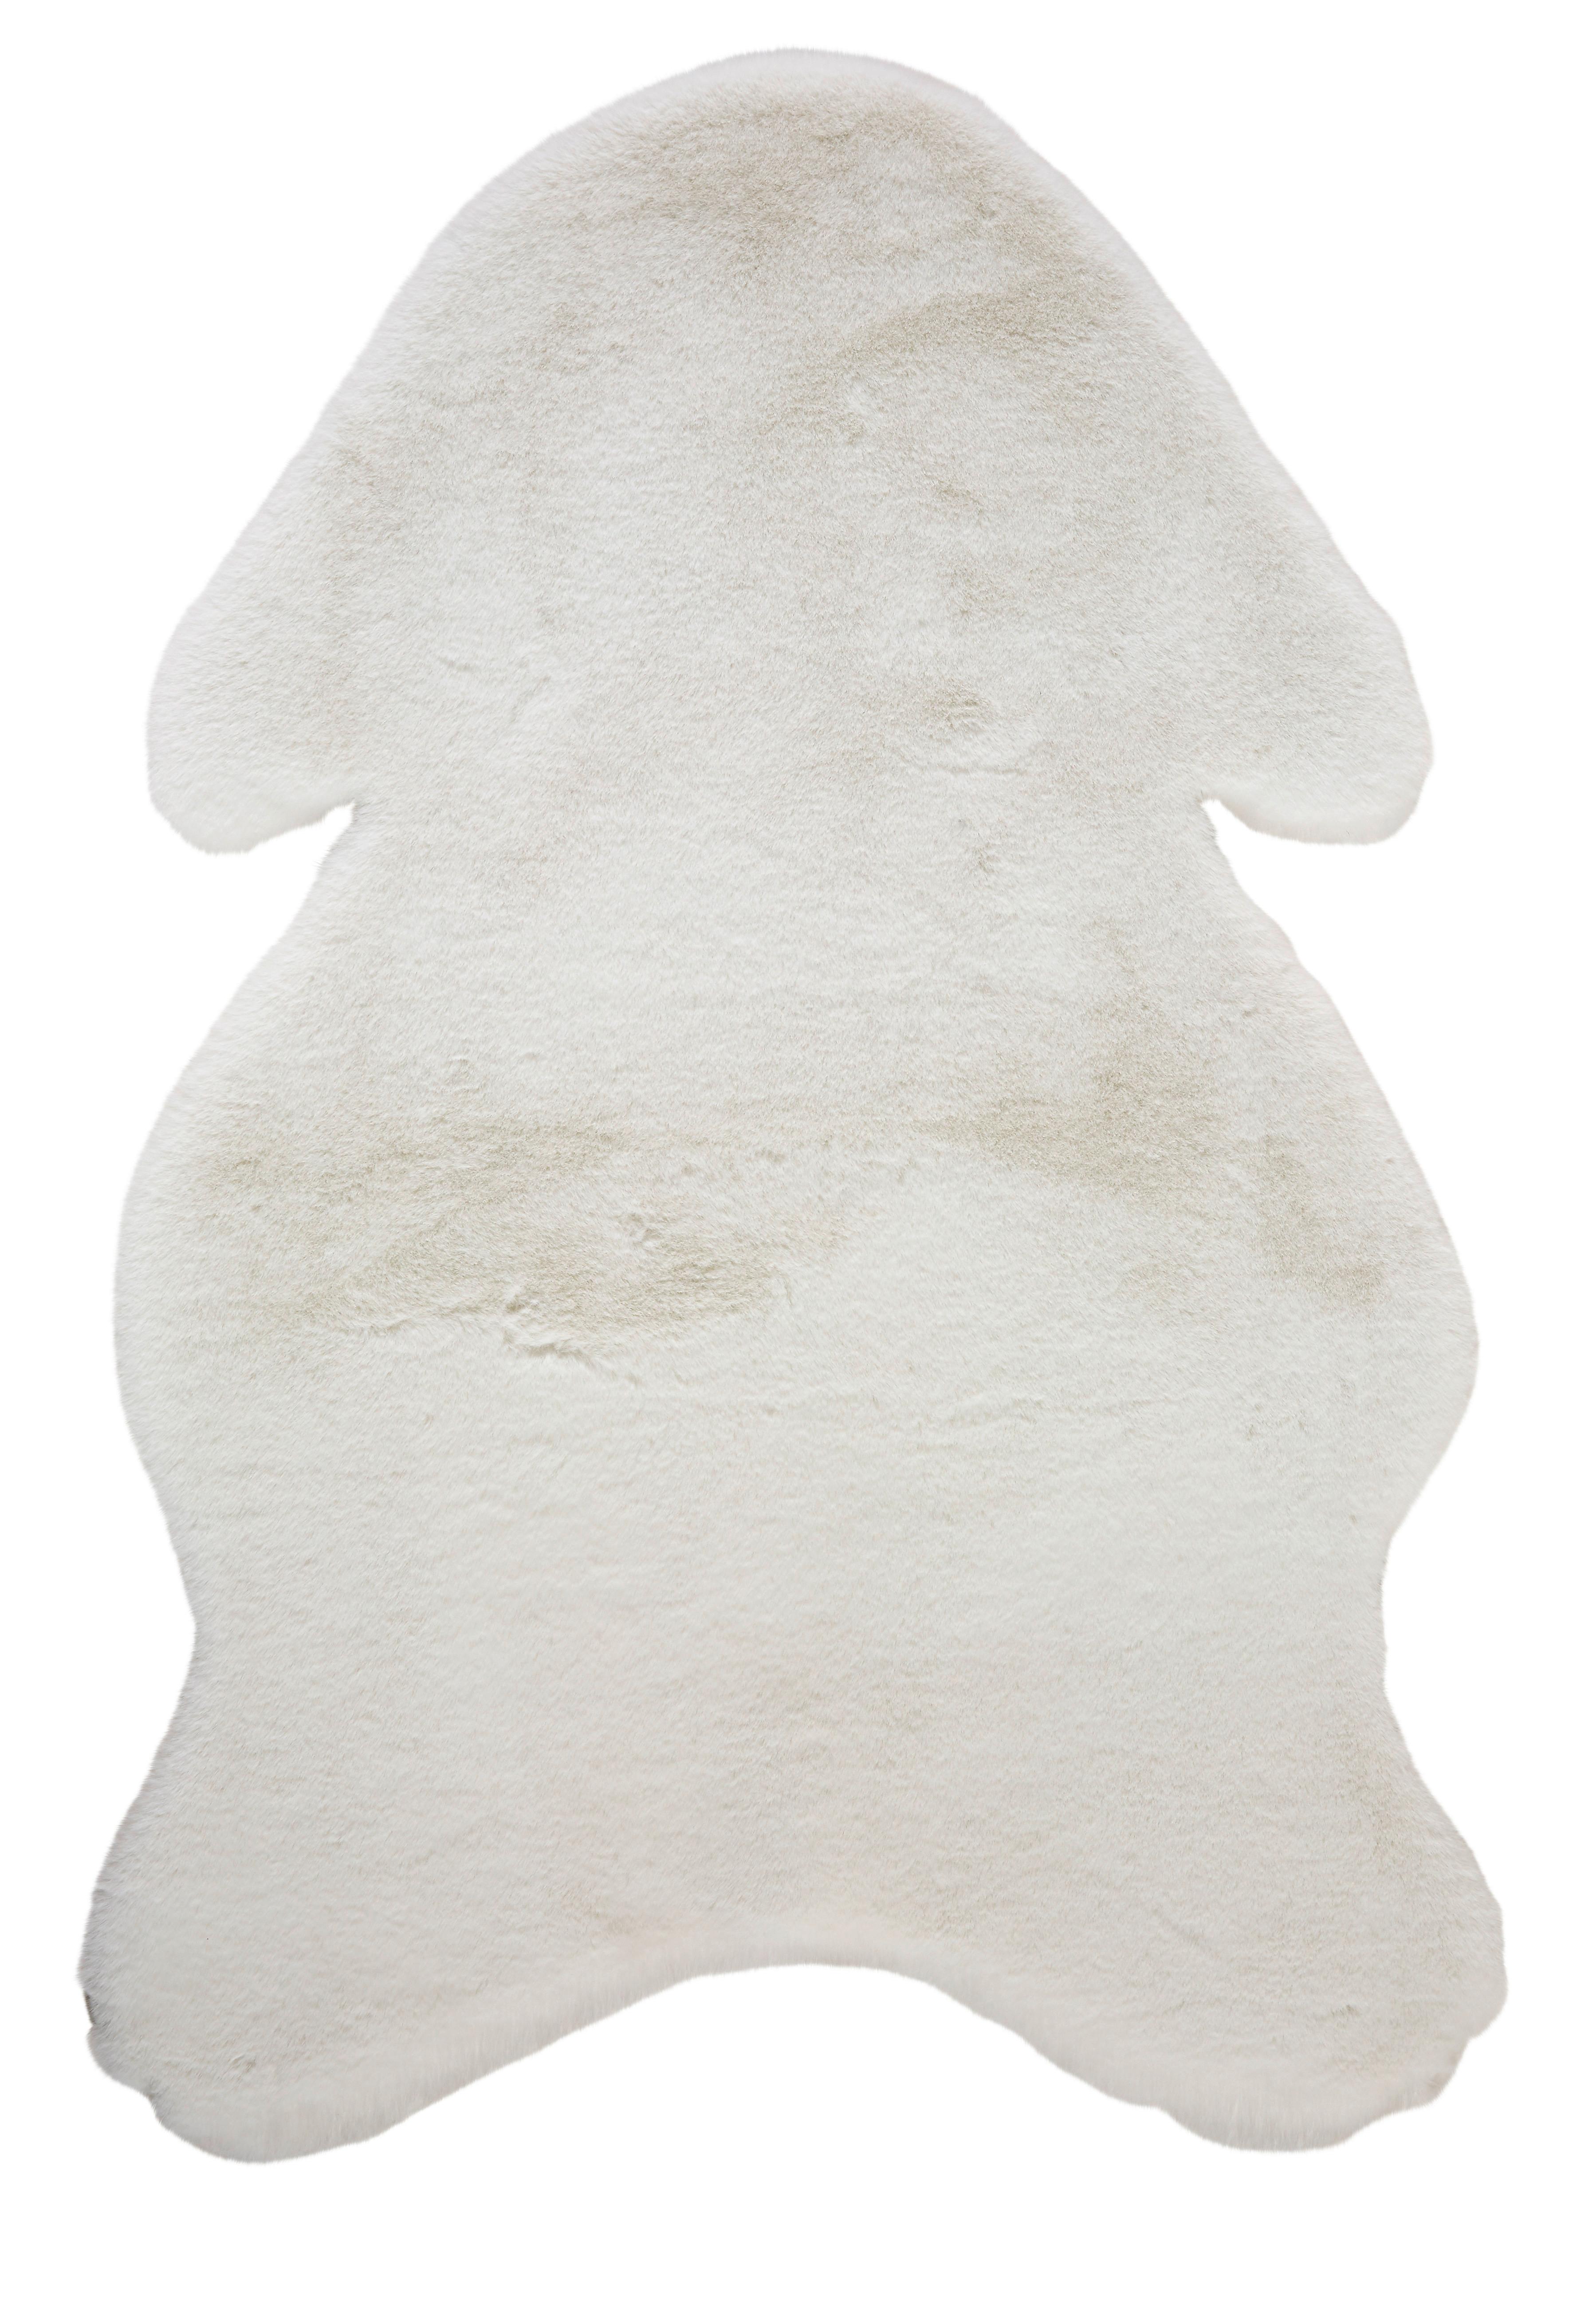 Umelá Kožušina Marlene, 90/60cm, Biela - biela, textil/kožušina (90/60cm) - Modern Living